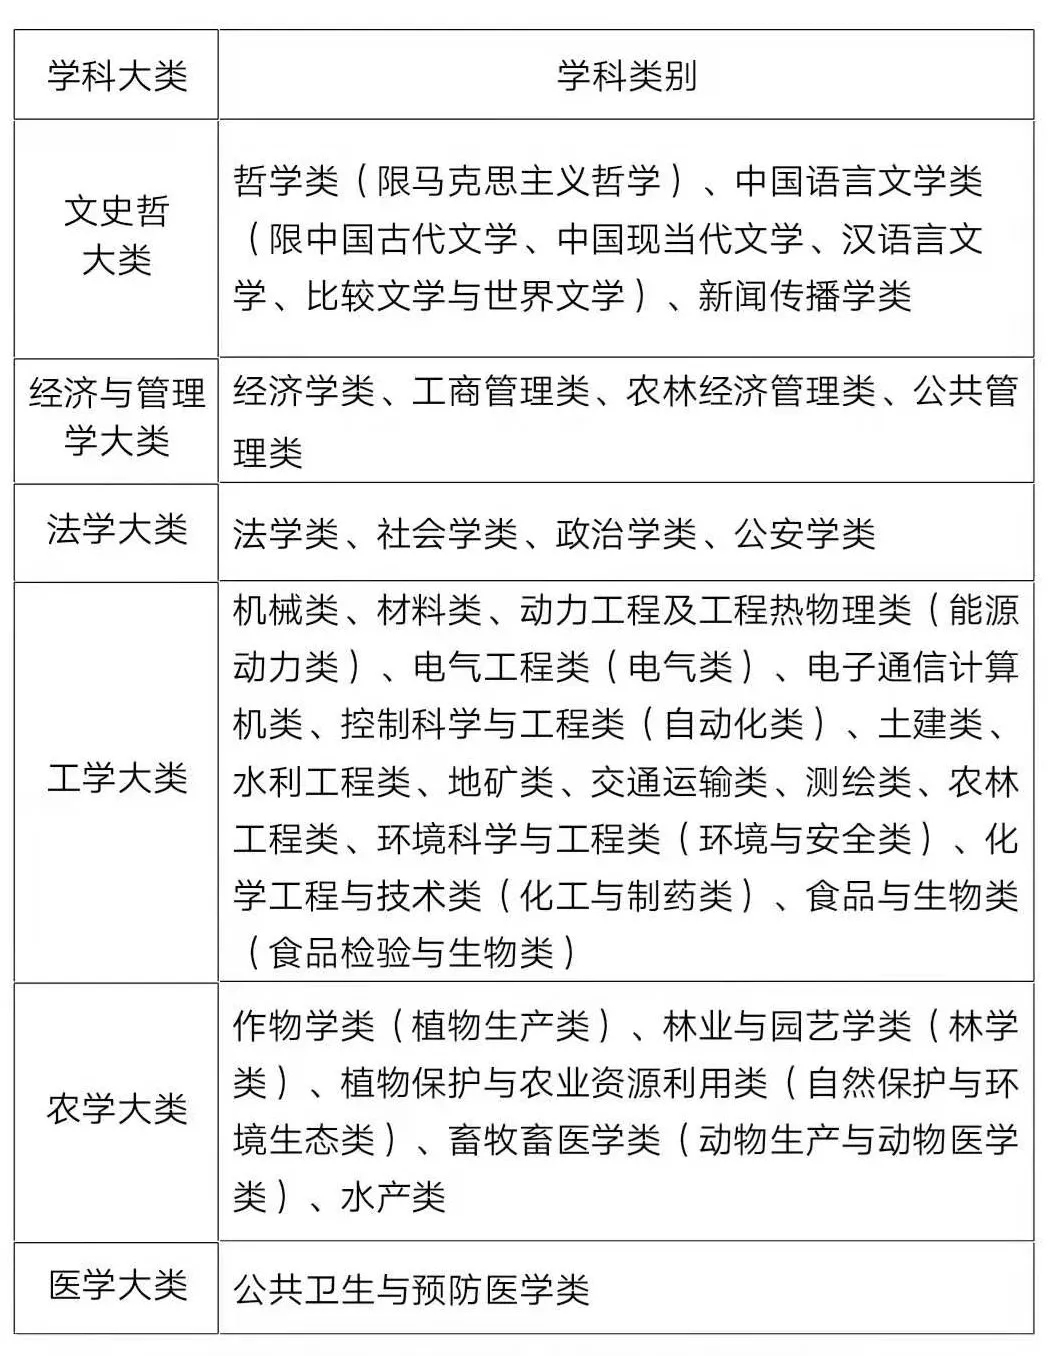 注：具体专业见2019年湖南省公务员考录专业目录。